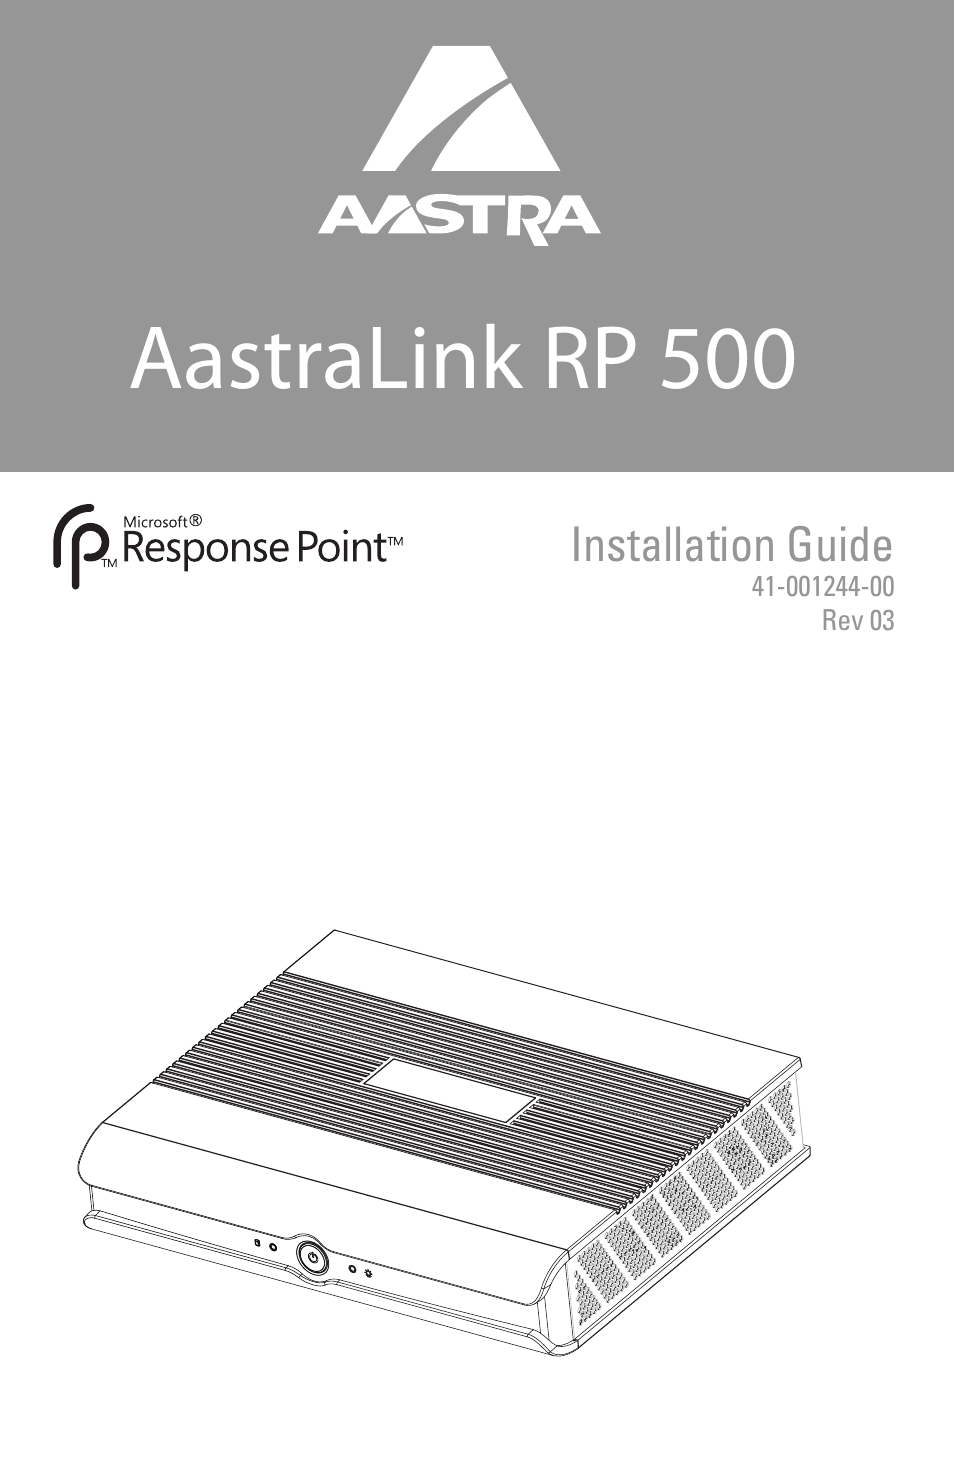 AastraLink RP 500